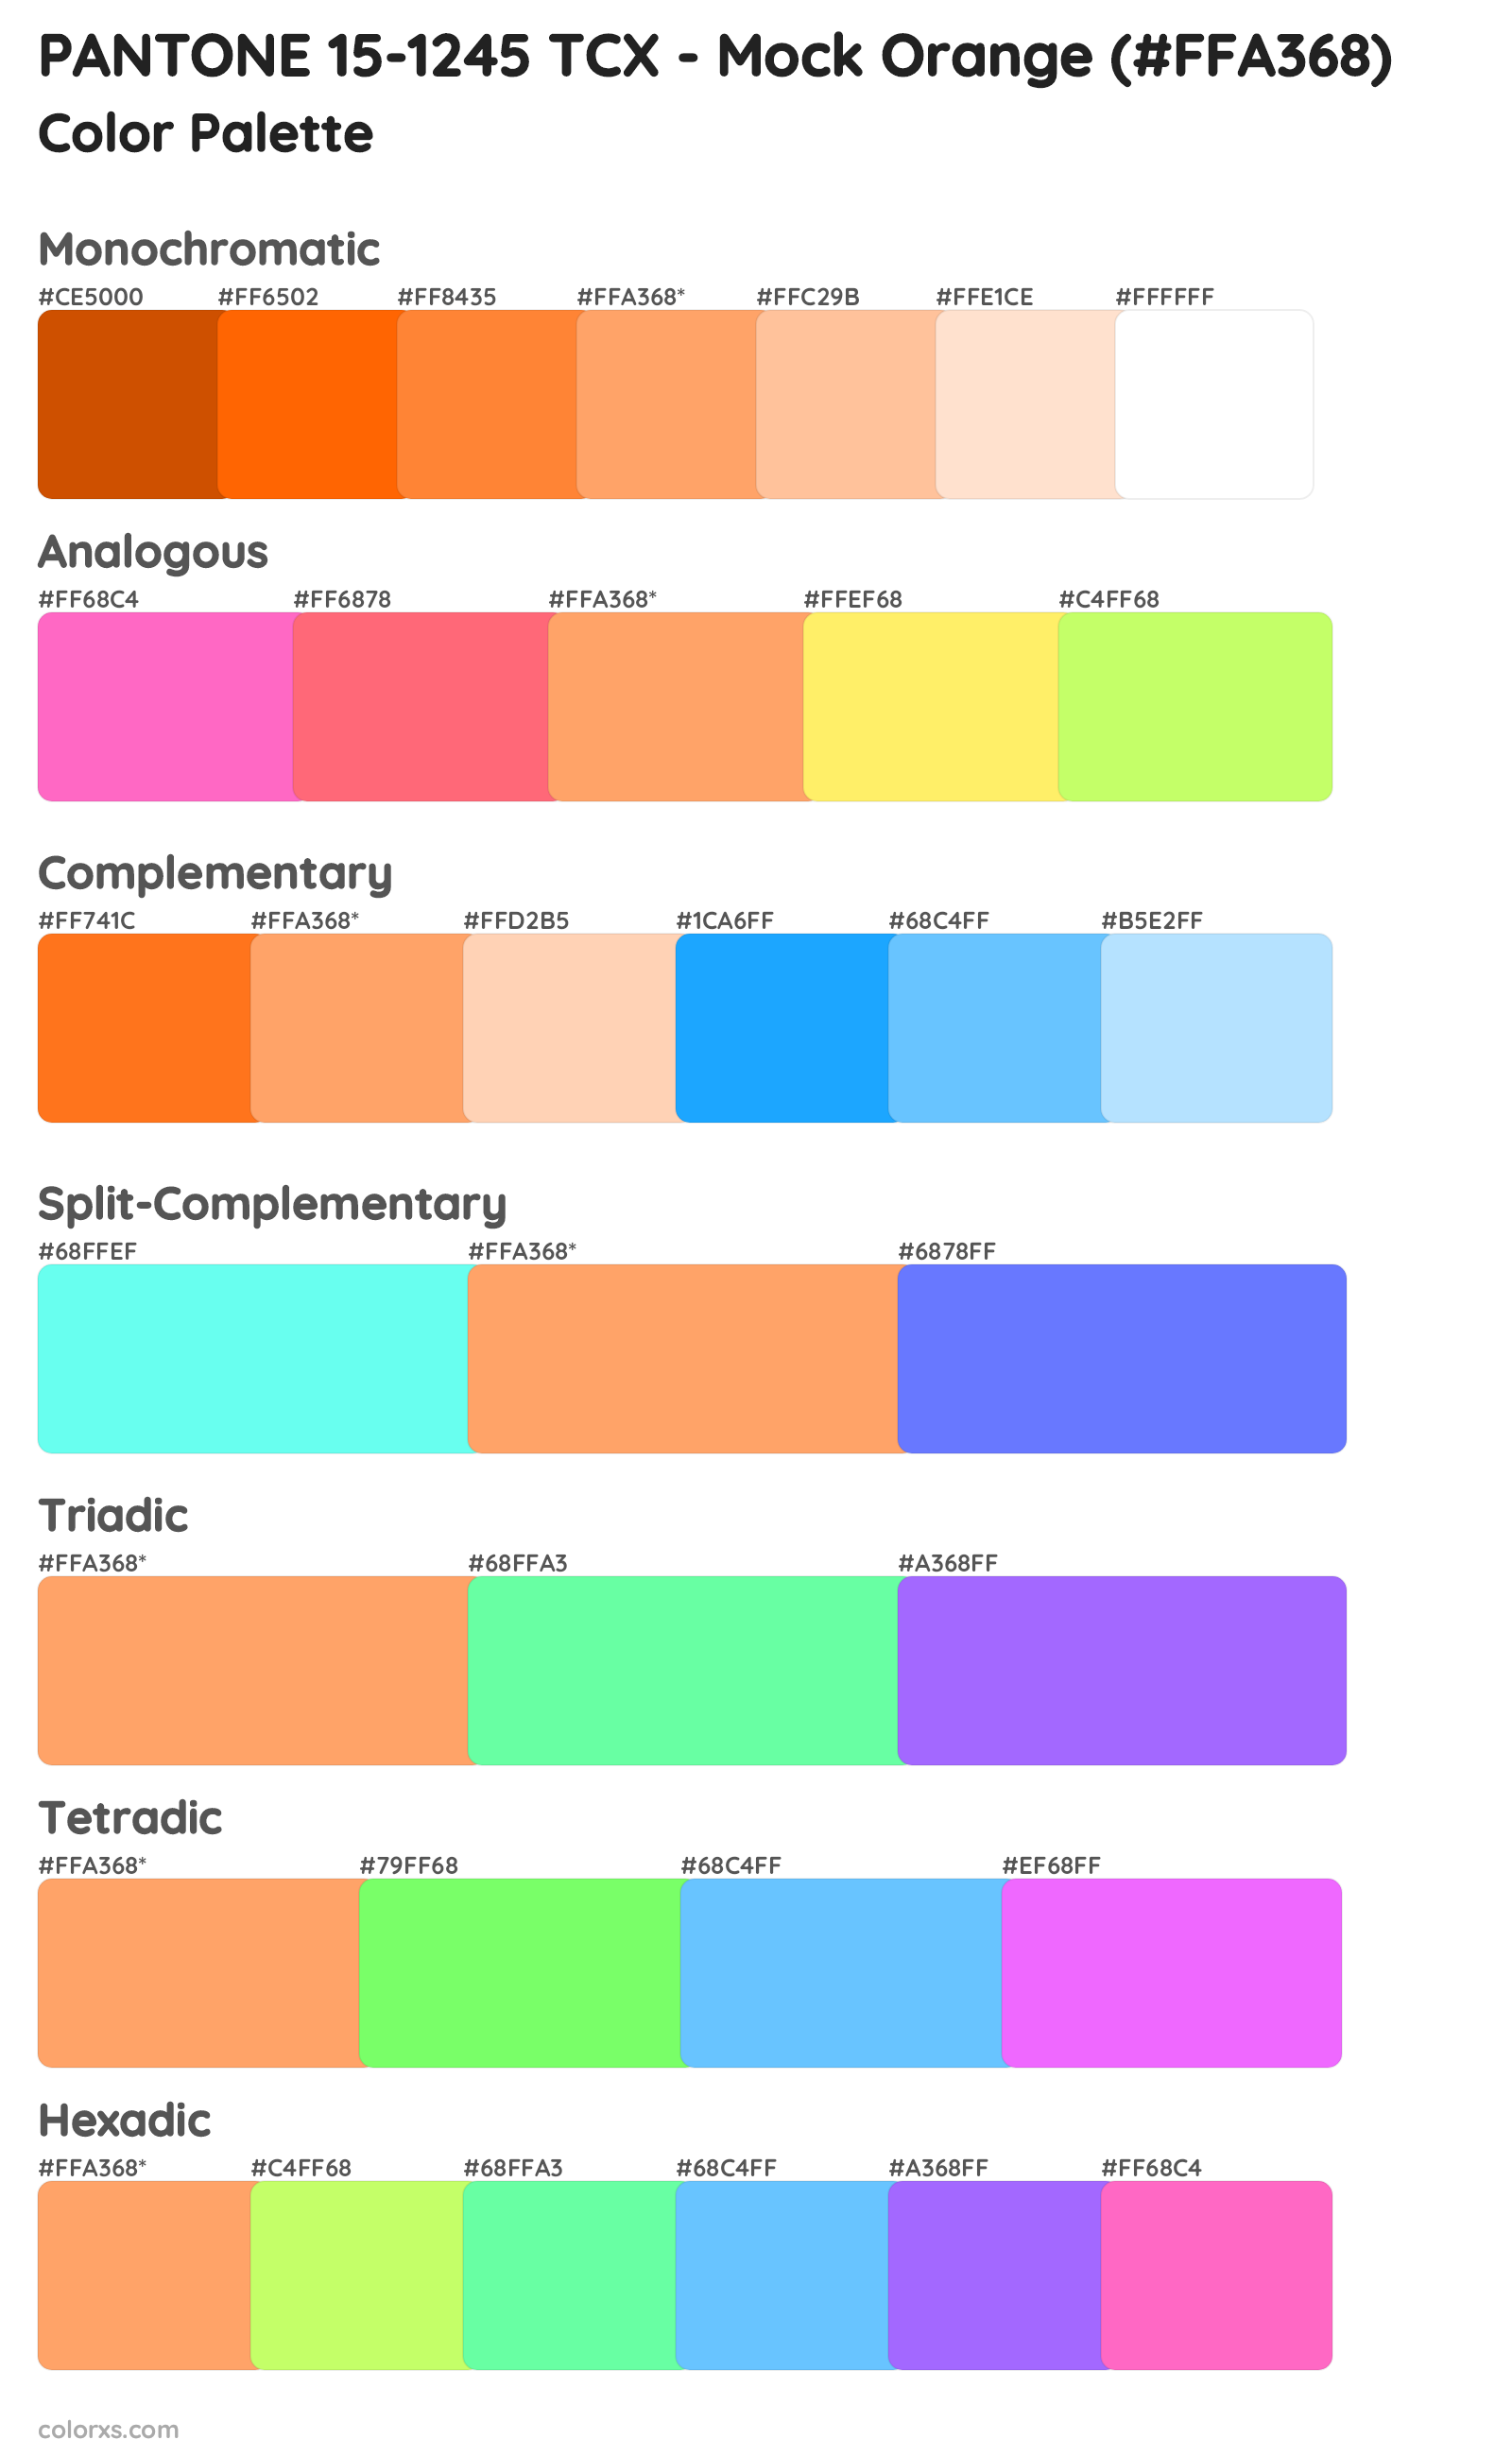 PANTONE 15-1245 TCX - Mock Orange Color Scheme Palettes